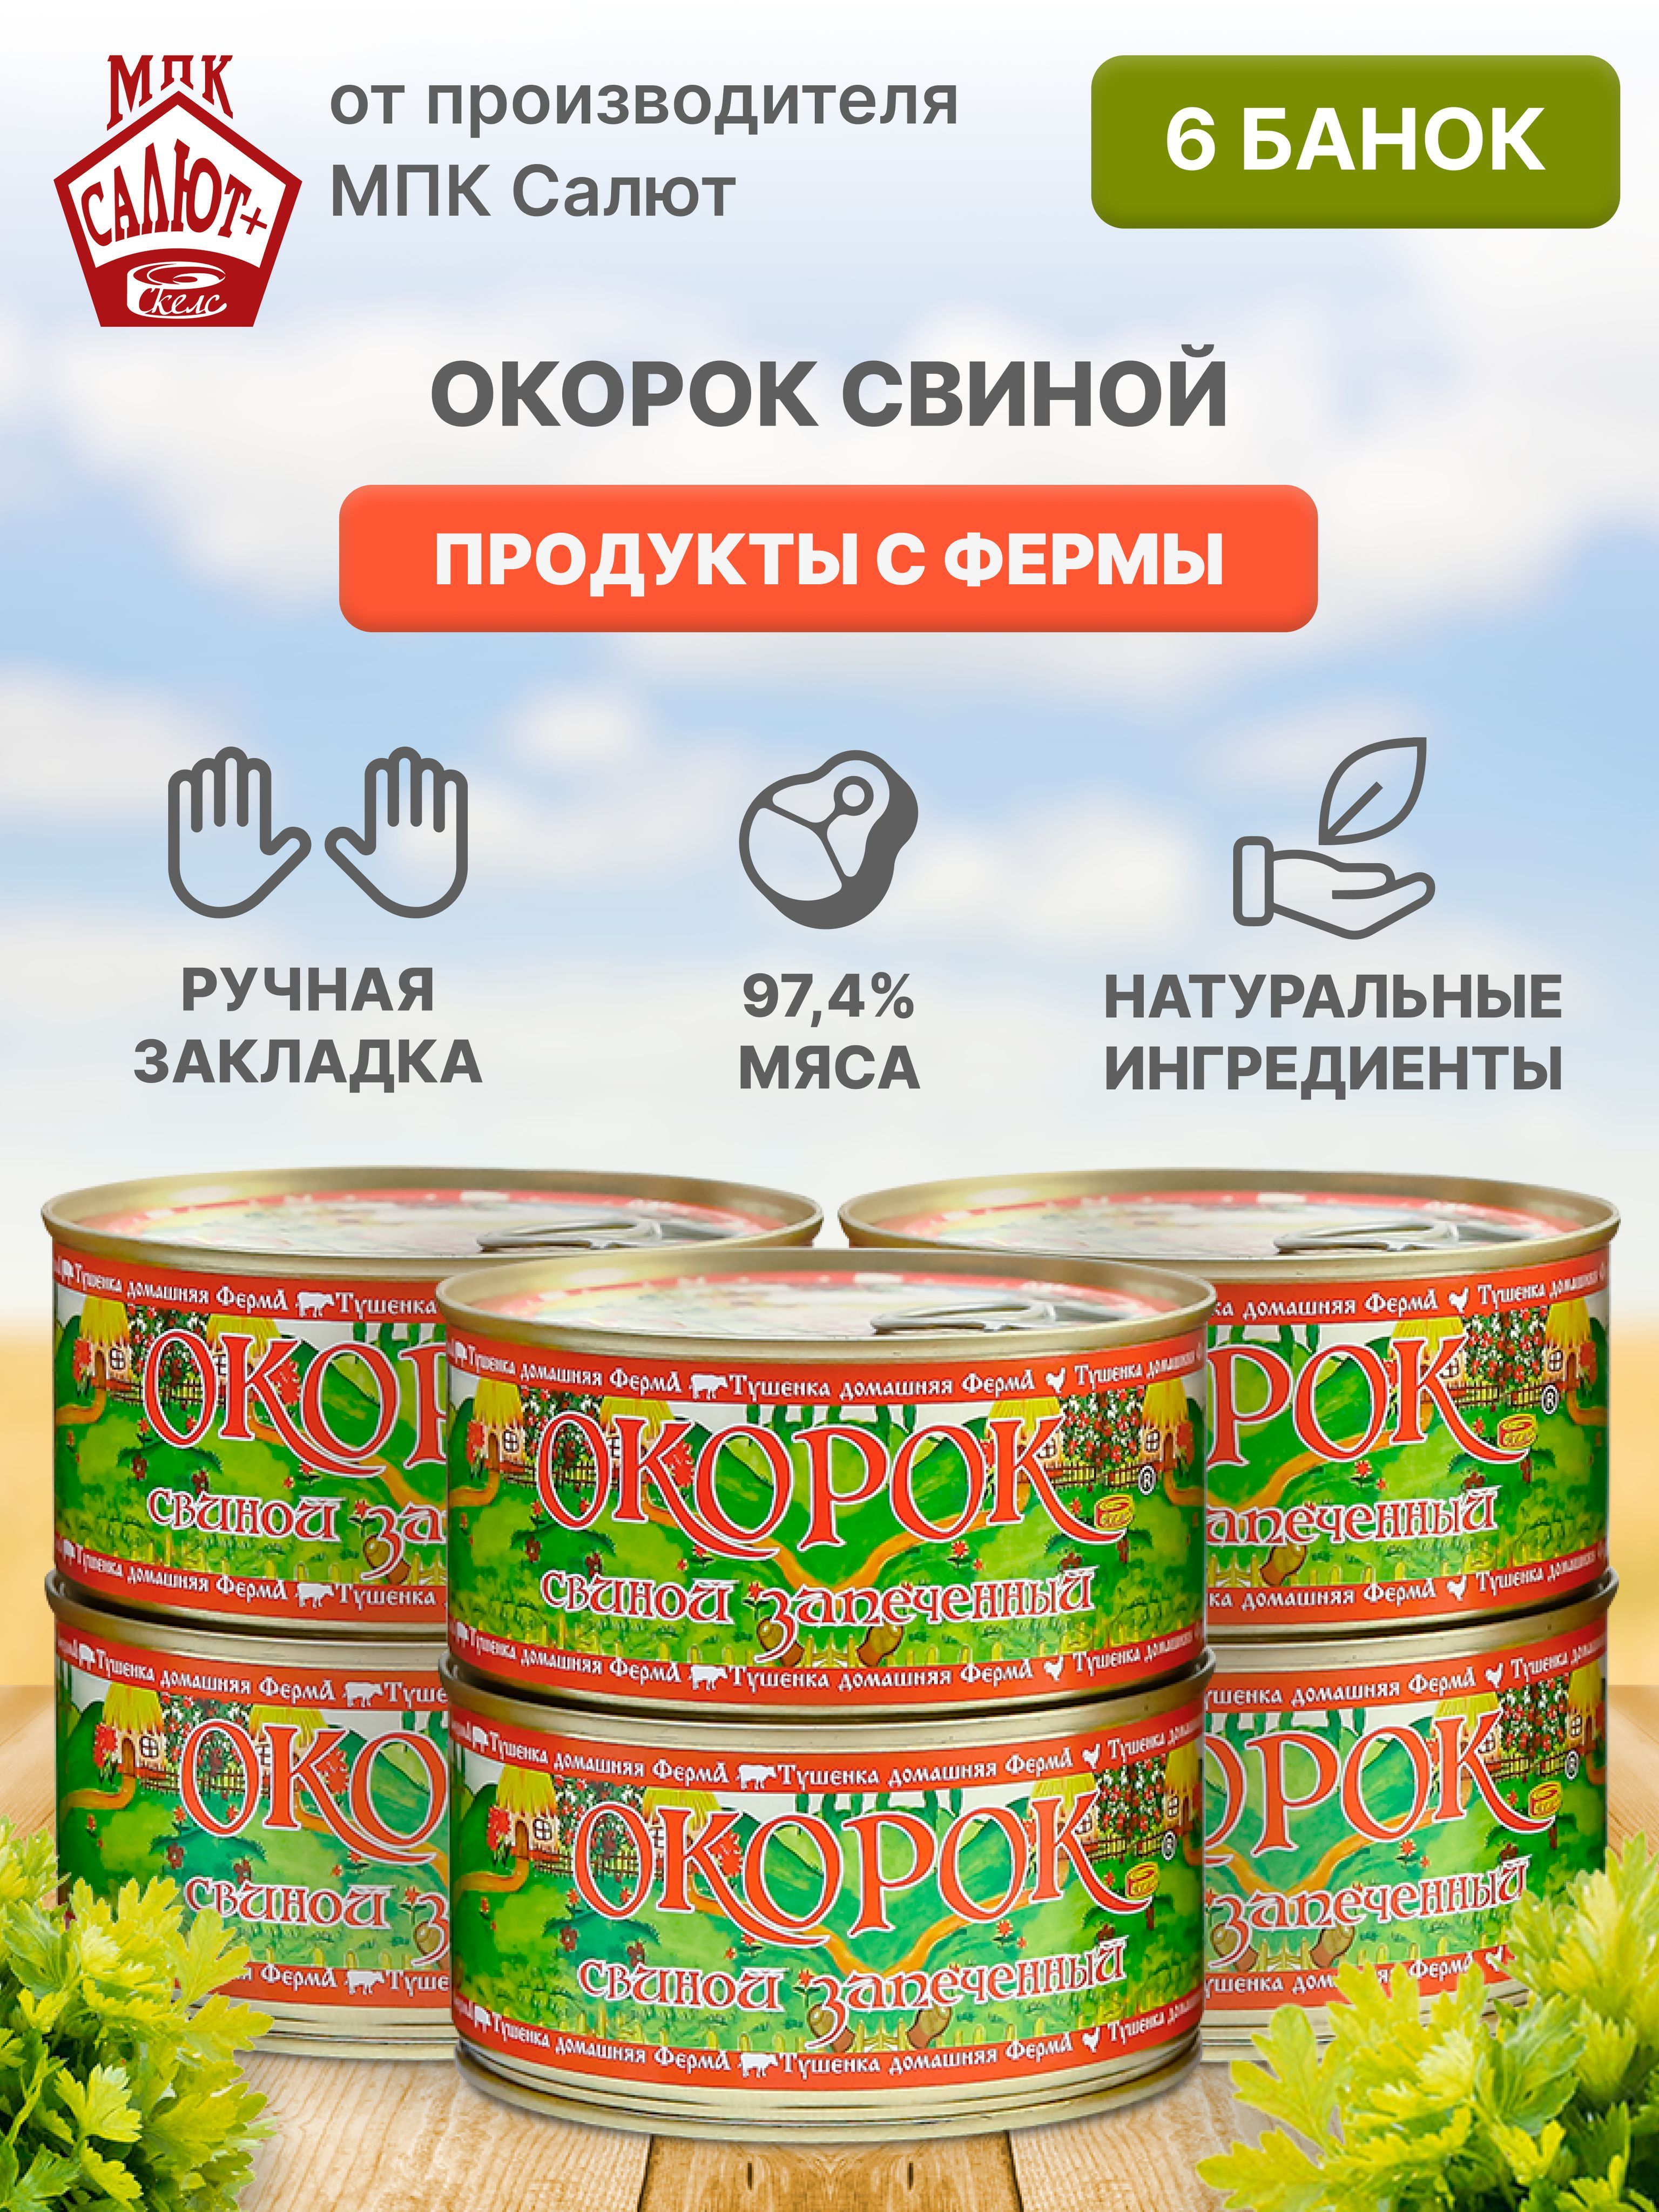 Рецепты заготовки русской кухни